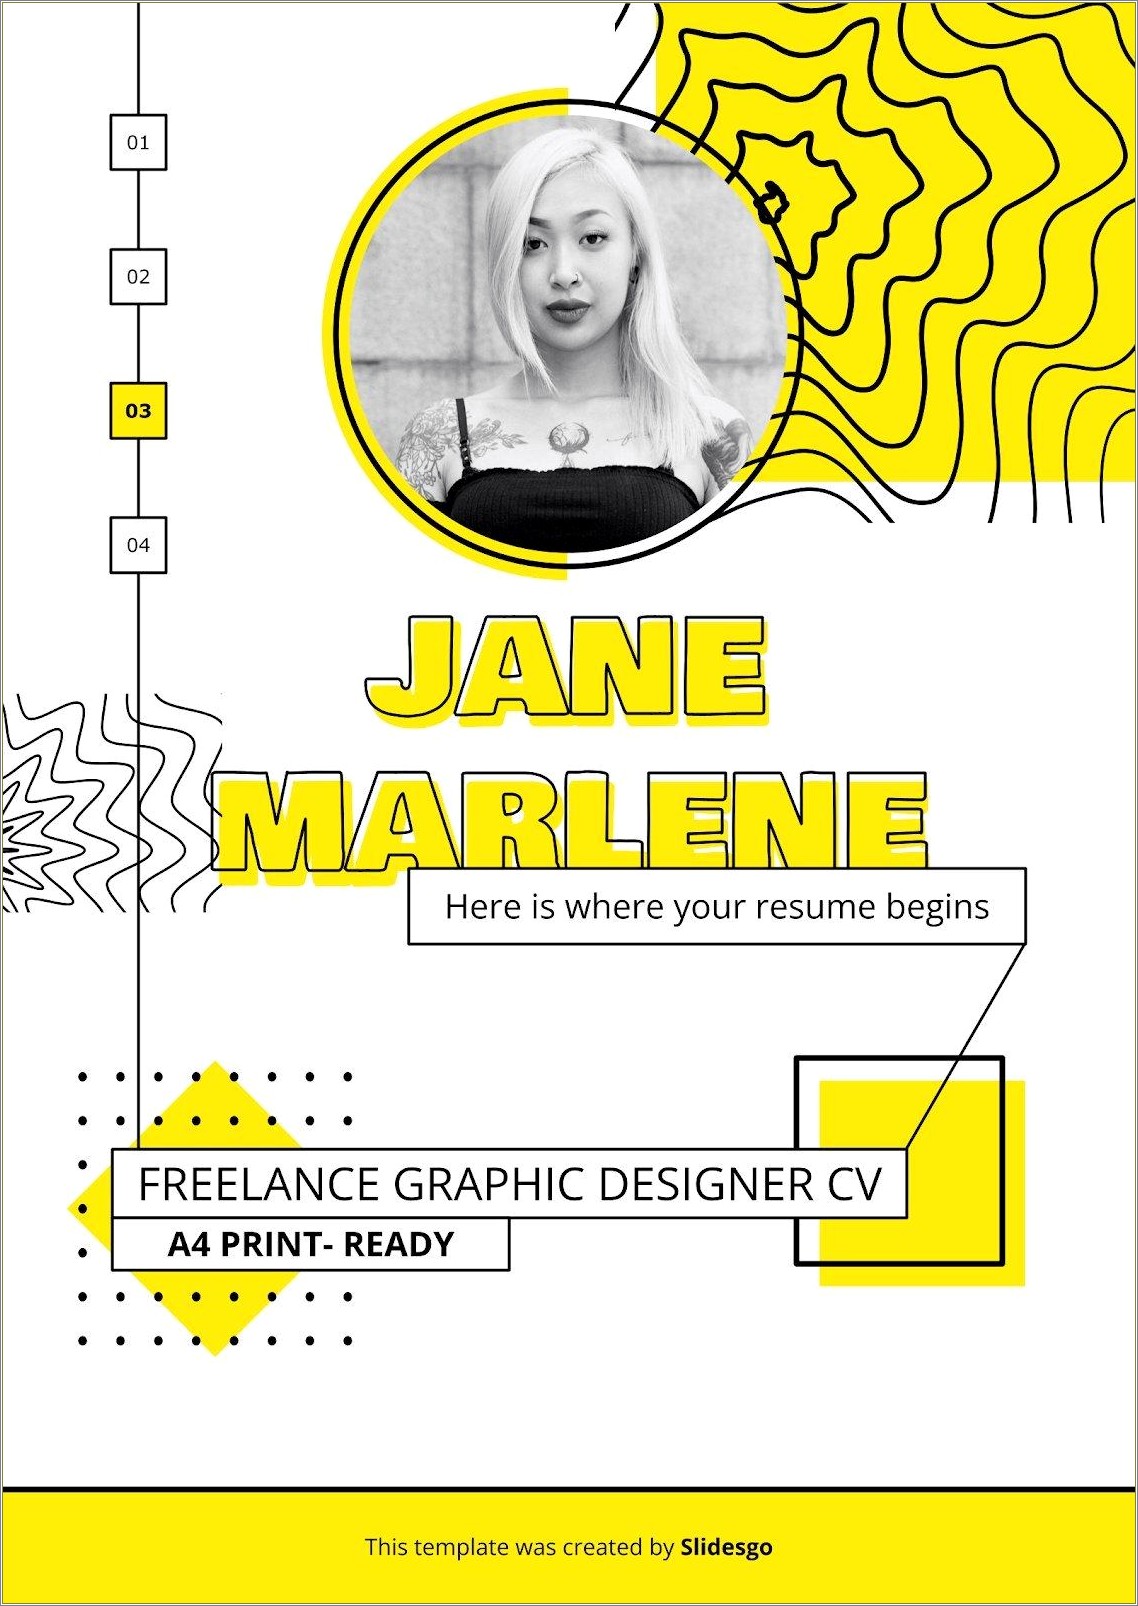 Sample Resume For Freelance Graphic Designer